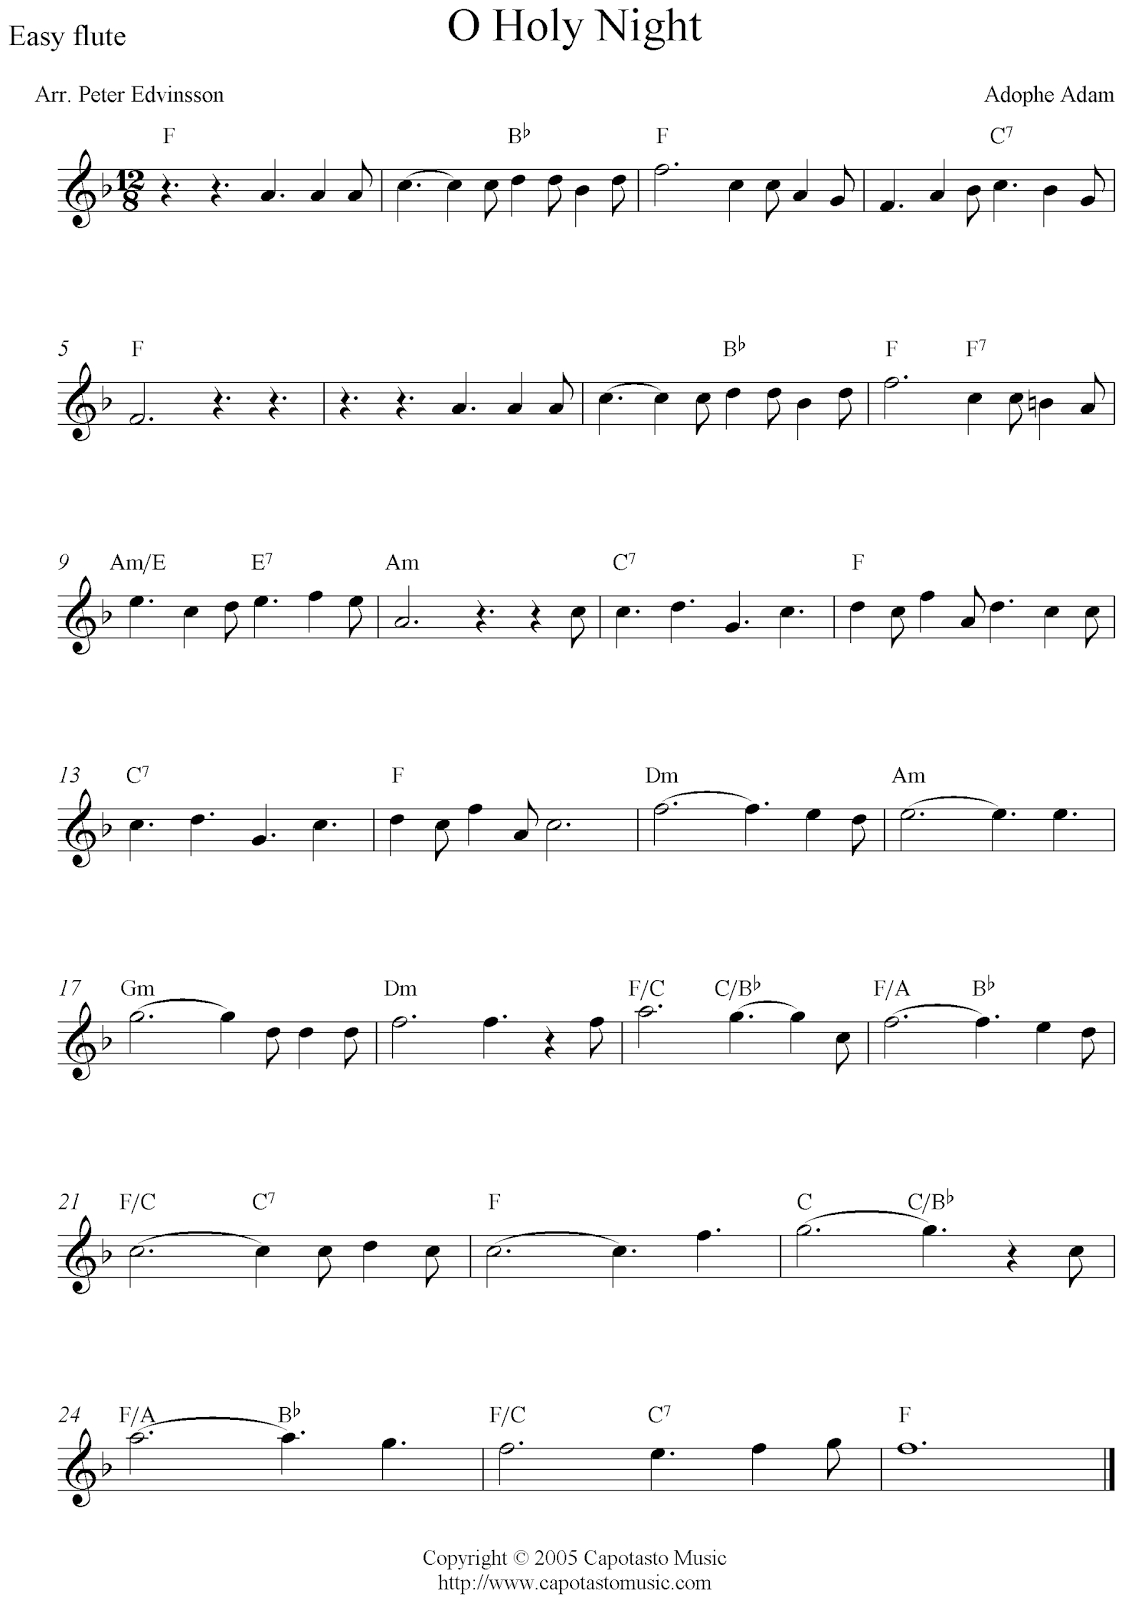 Free Sheet Music Scores: O Holy Night, Free Christmas Flute Sheet - Free Printable Flute Sheet Music